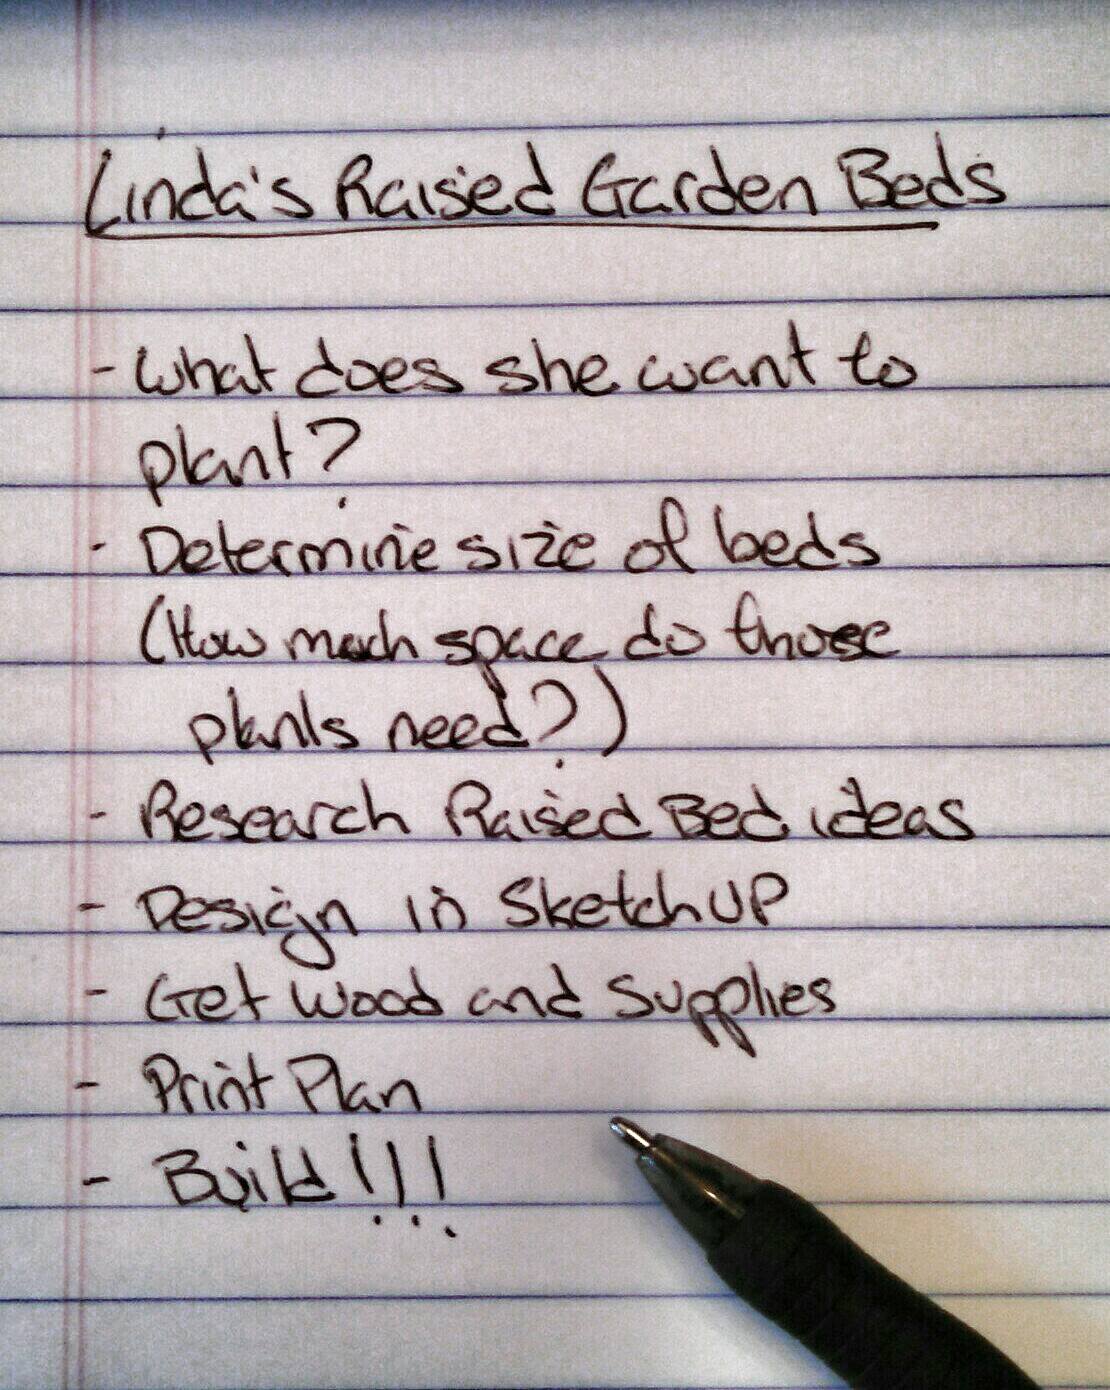 Linda's List